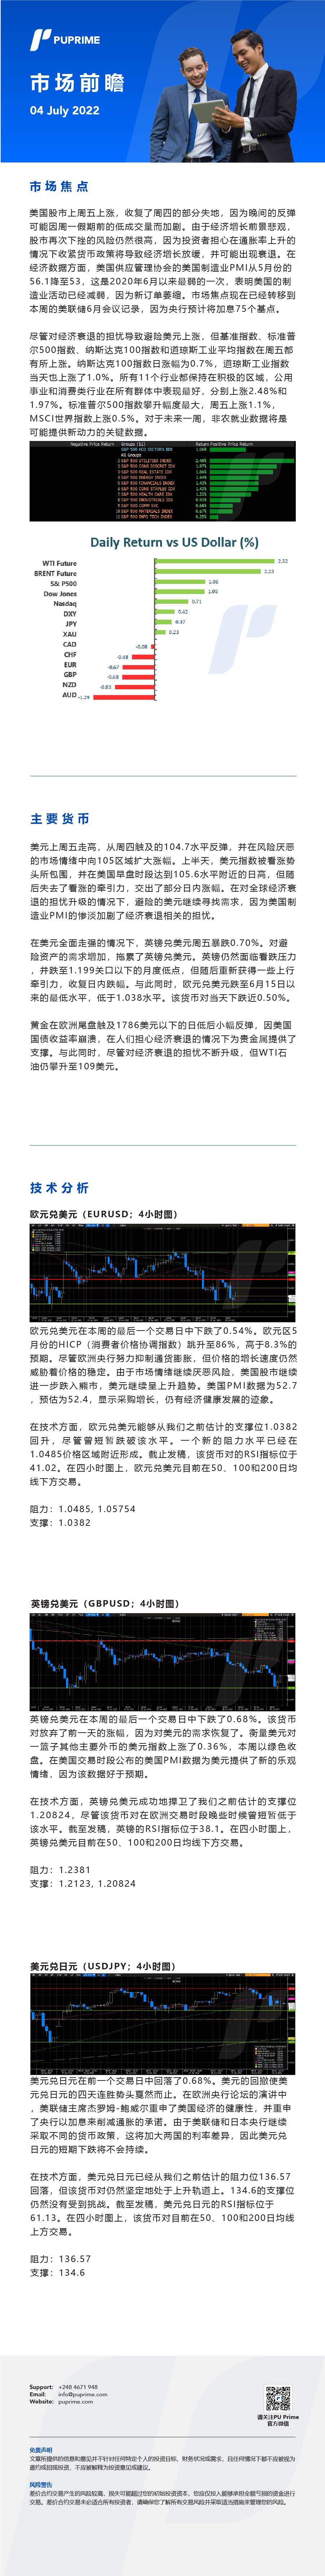 04072022 Daily Market Analysis__CHN.jpg